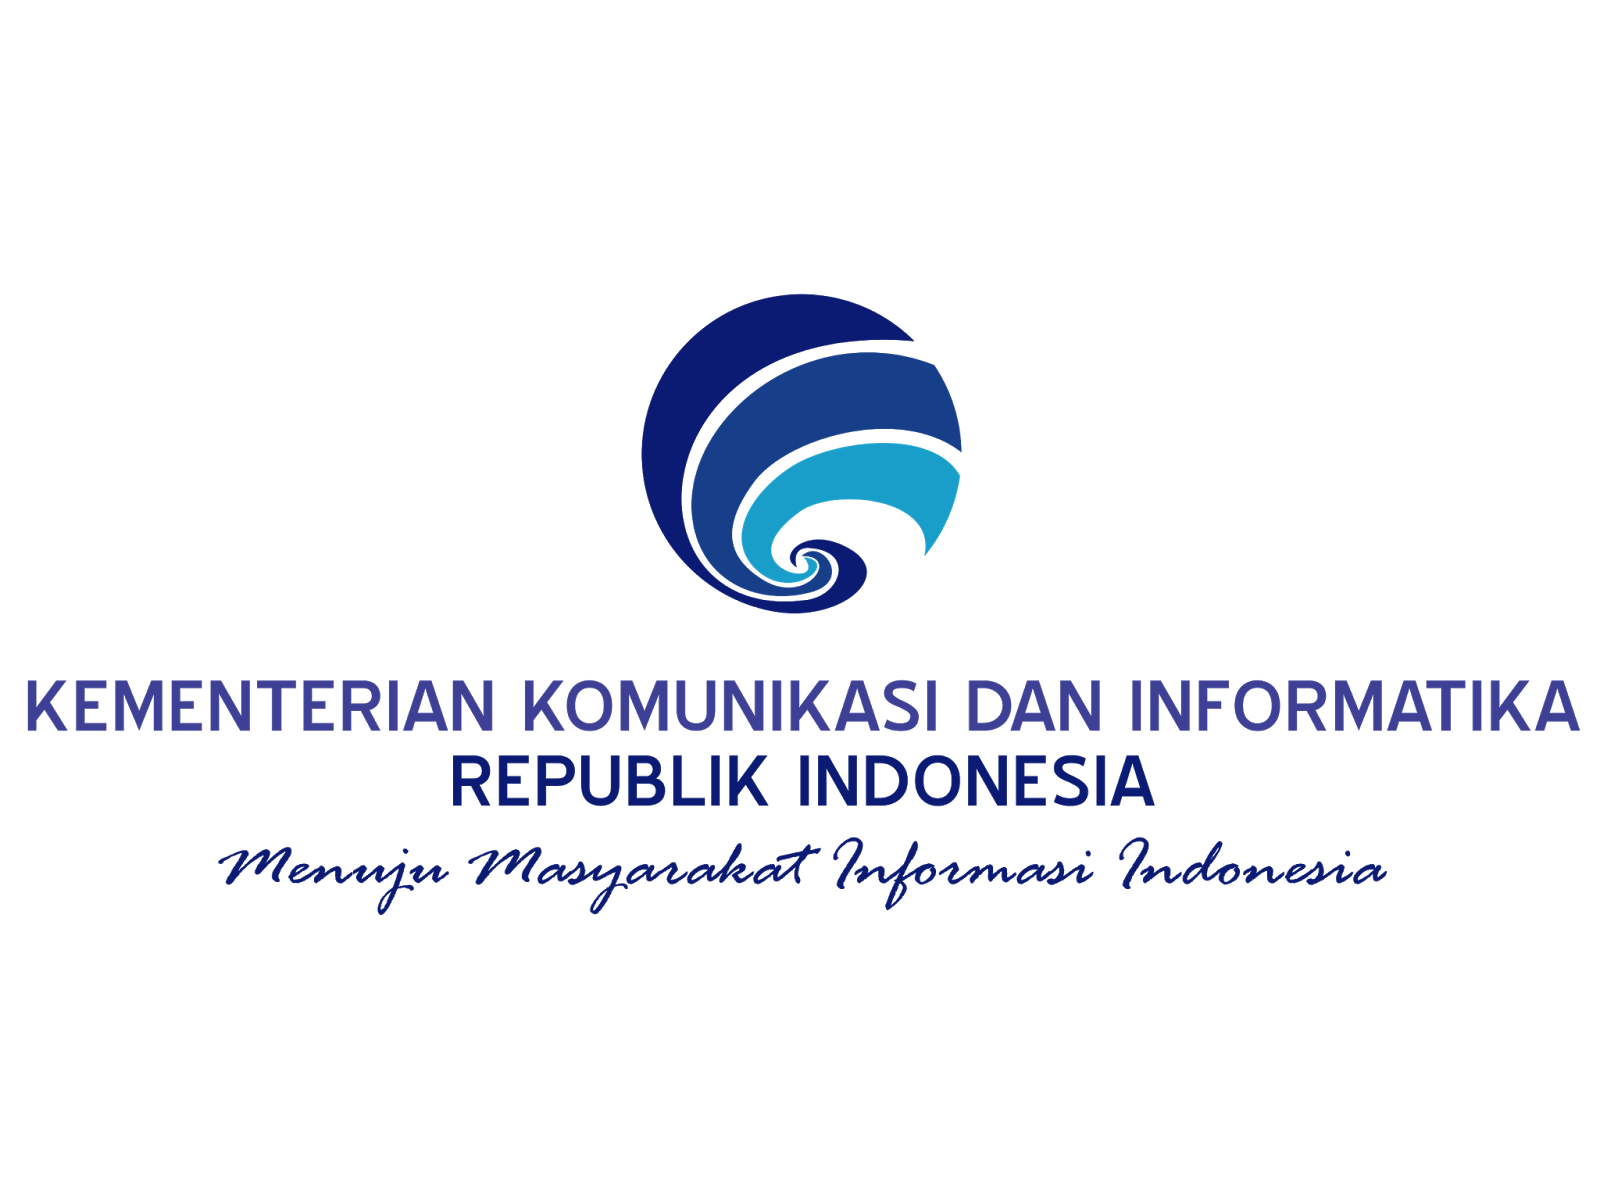 Logo Kominfo Format Cdr & Png | GUDRIL LOGO | Tempat-nya ...